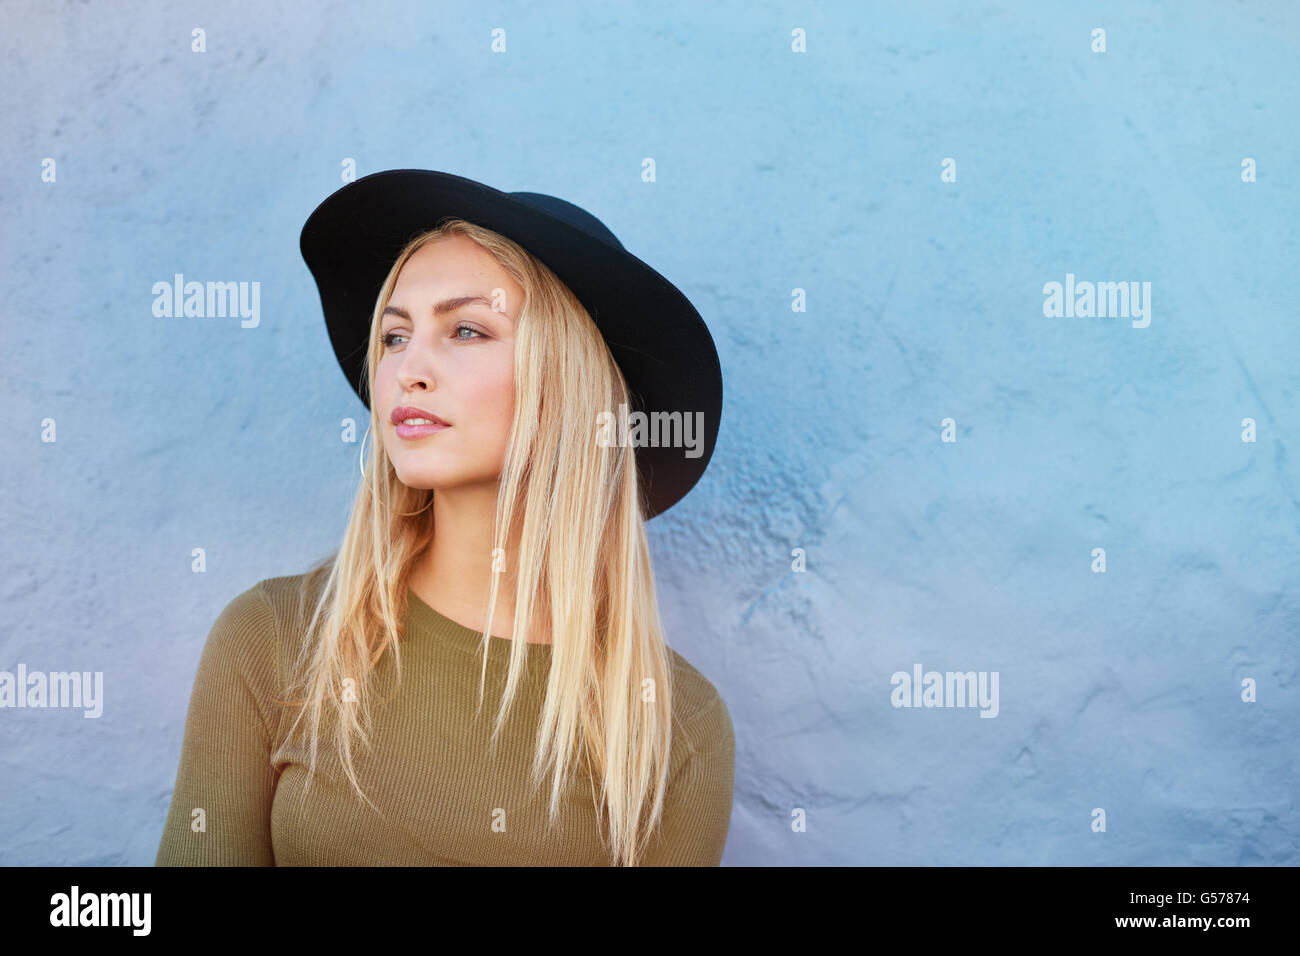 Portrait of attractive young female model avec chapeau à l'extérieur contre un mur bleu. Portrait of young blonde woman with copy space. Banque D'Images